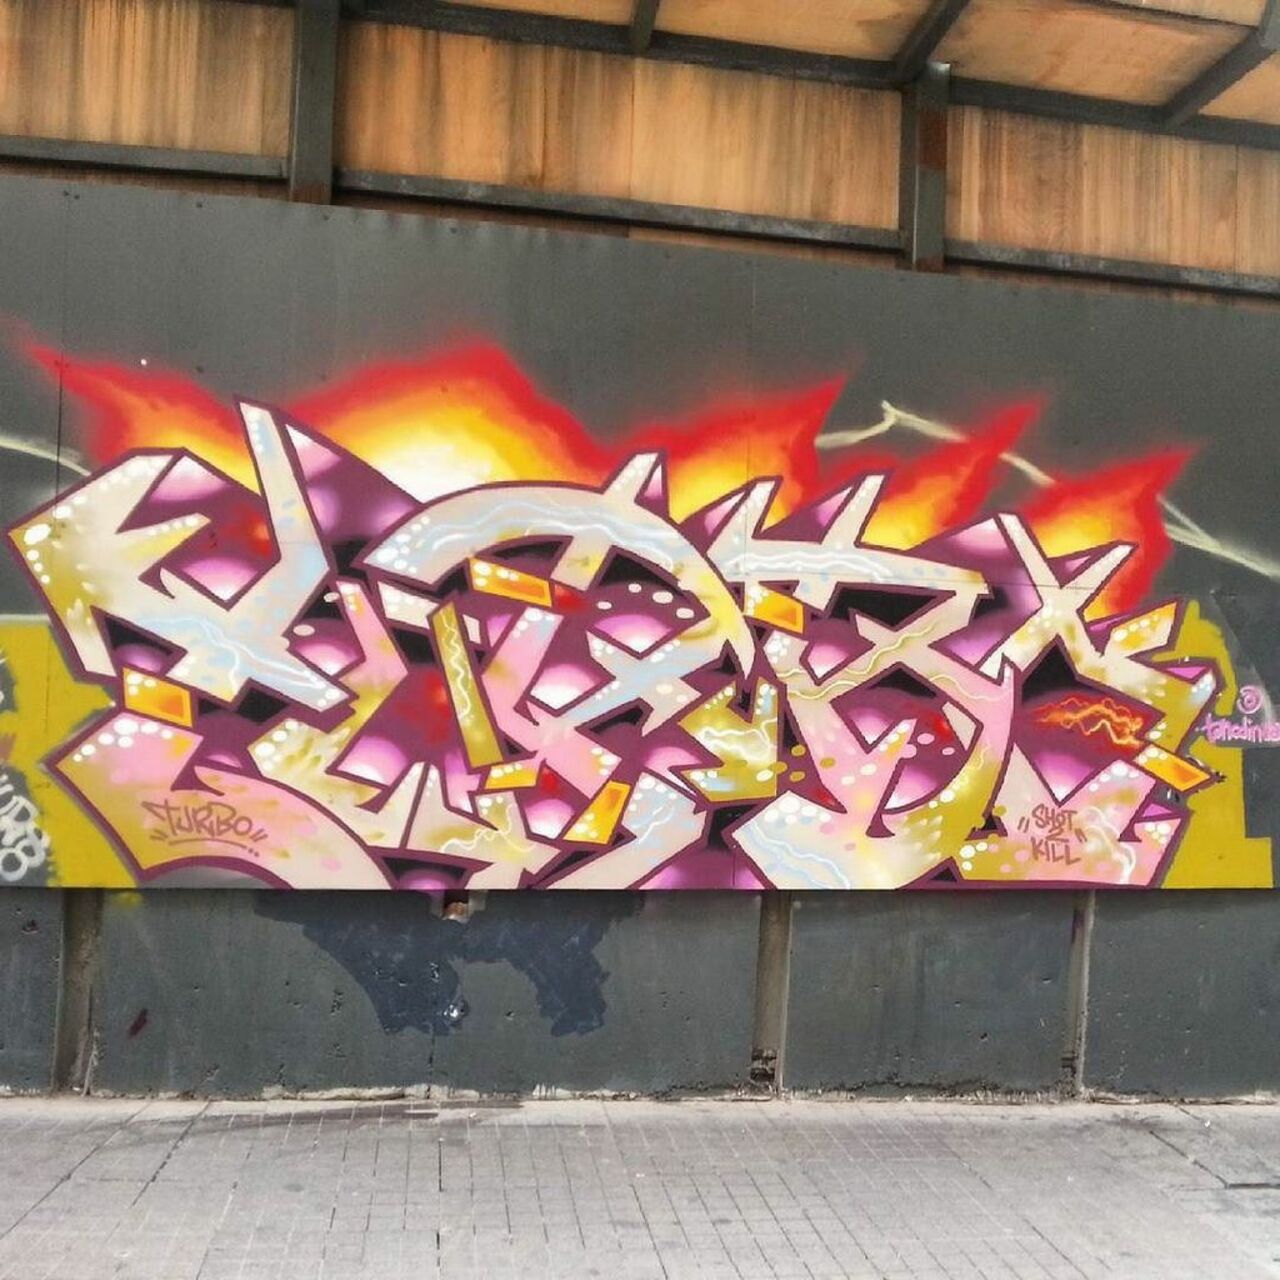 #streetart #graffiti #publicart #urbanart #sokaksanatı #streetartistanbul #istanbulstreetart #graffitiart by wallen… https://t.co/Do3Lgkjuw0